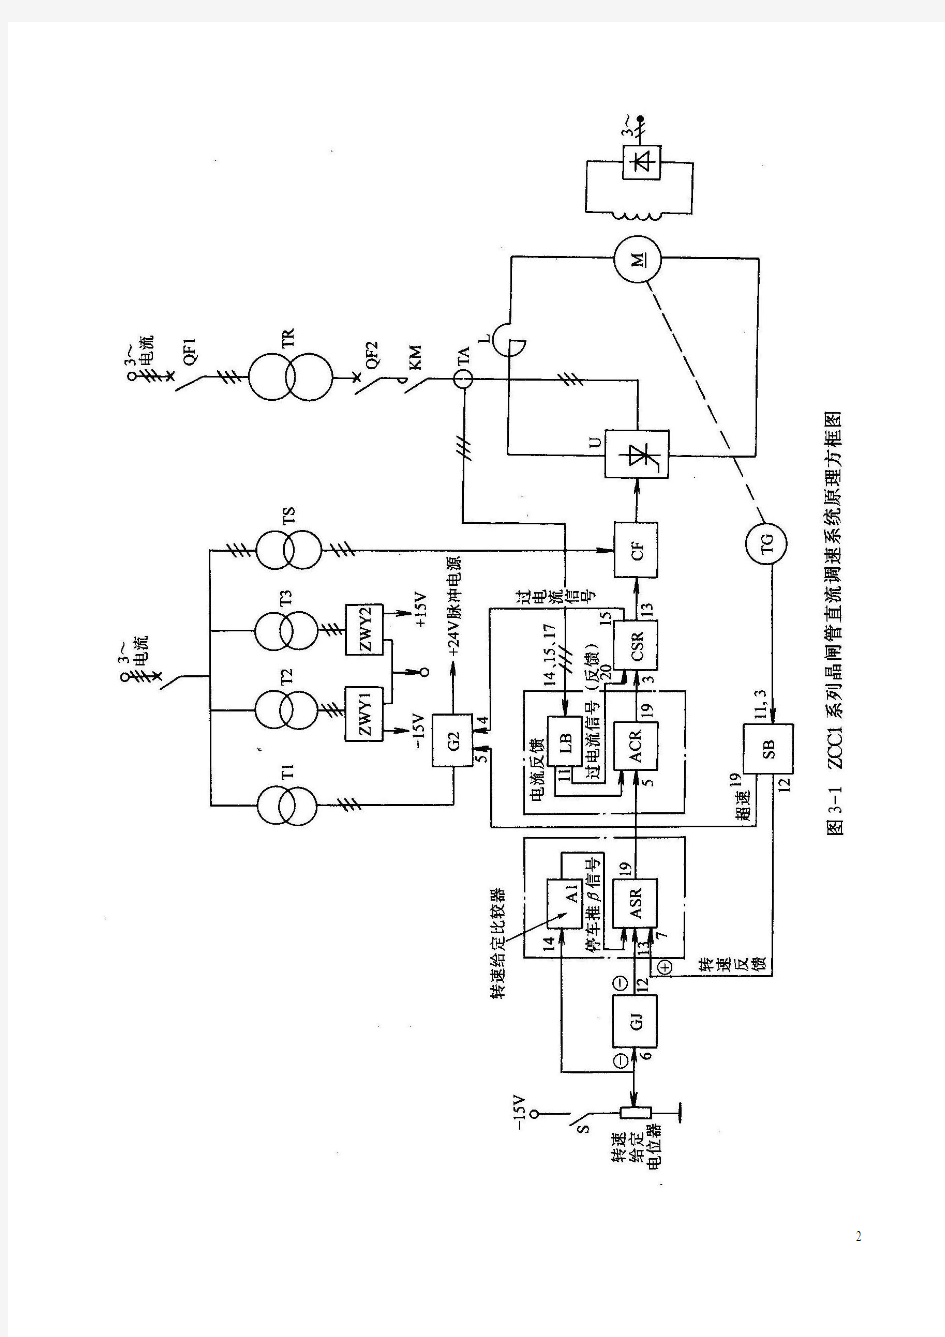 案例转速、电流双闭环直流调速系统分析